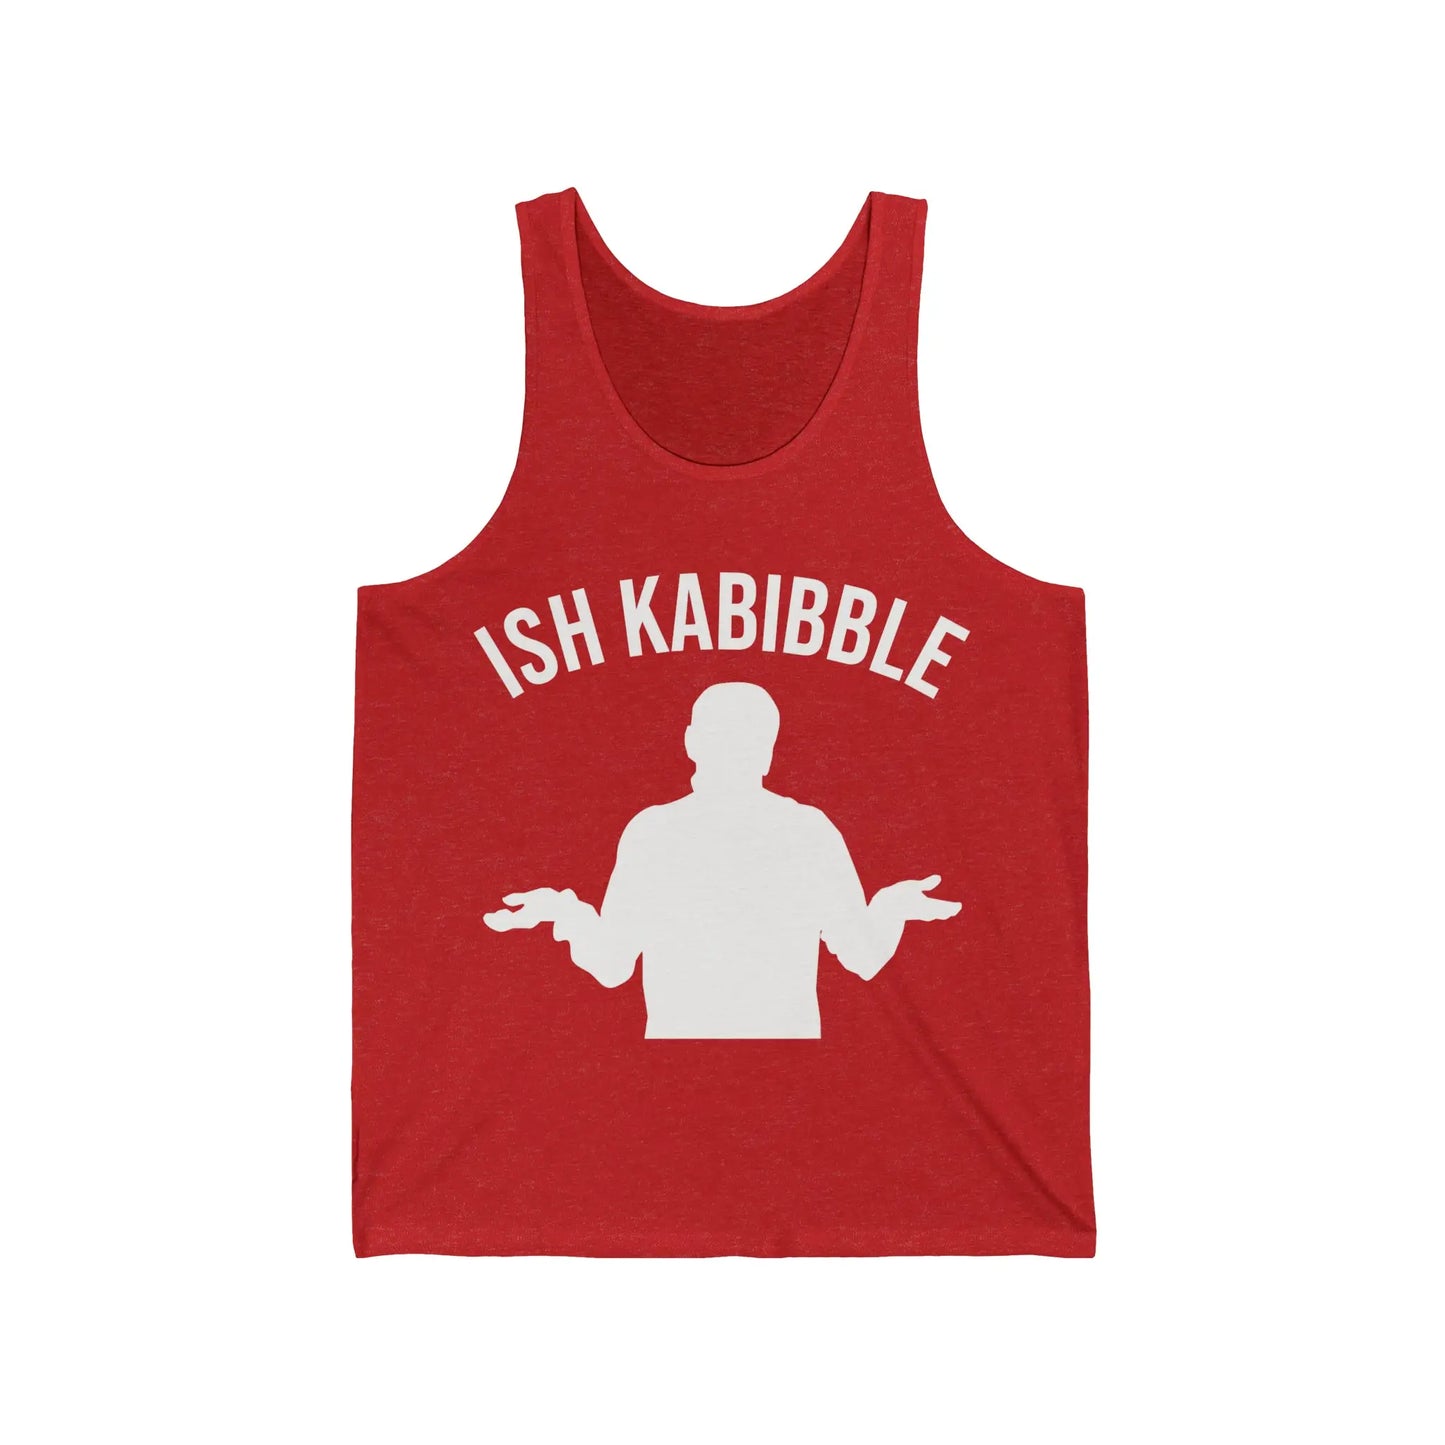 Ish Kabibble Men's Tank - Wicked Tees